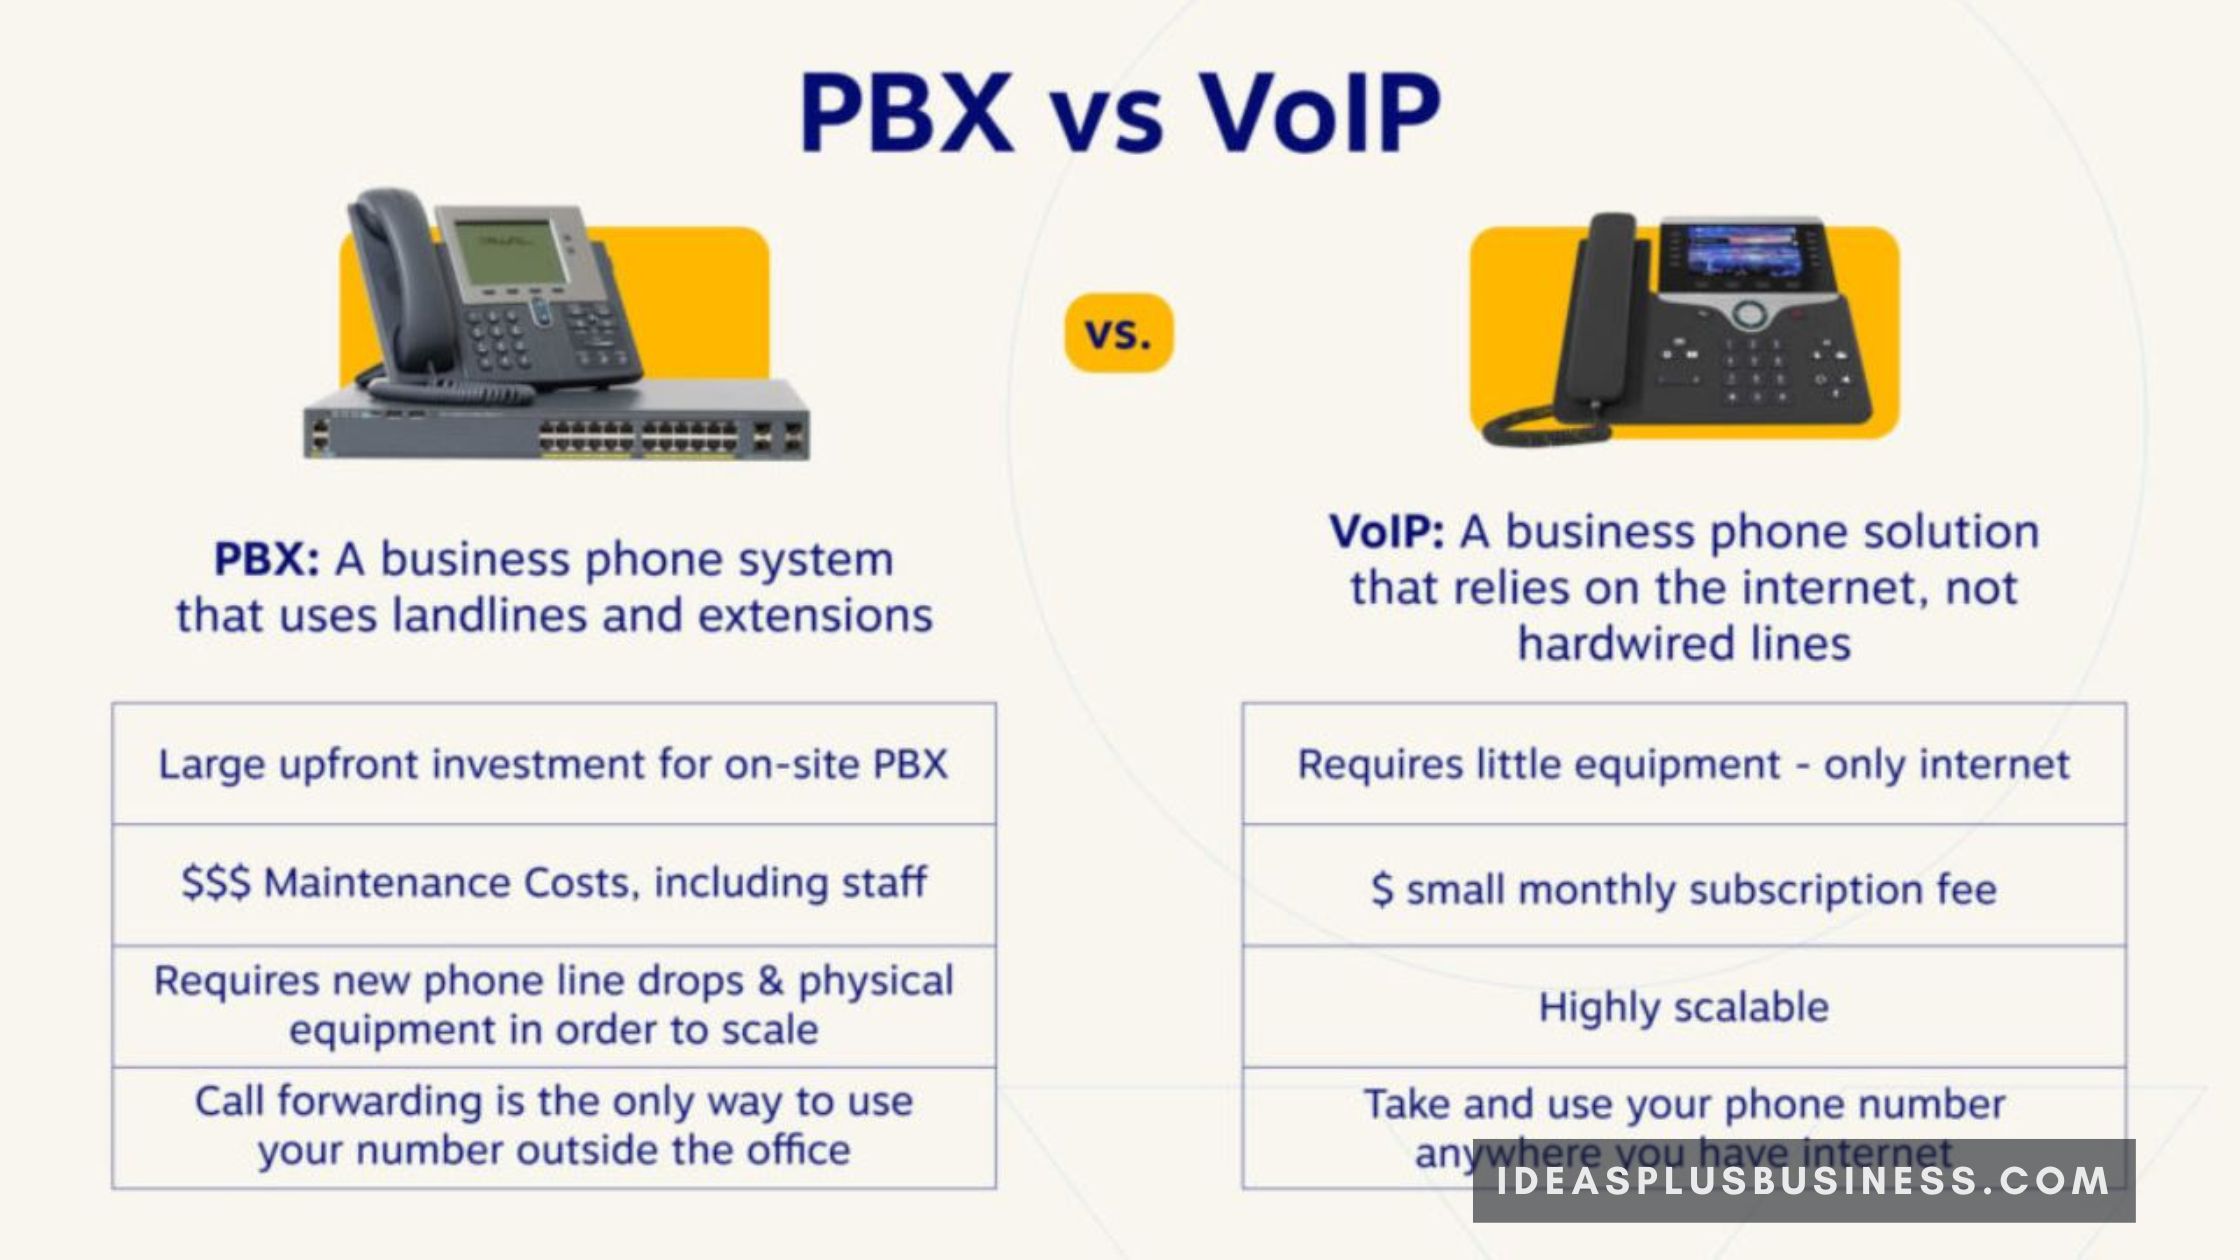 VOIP vs PBX?